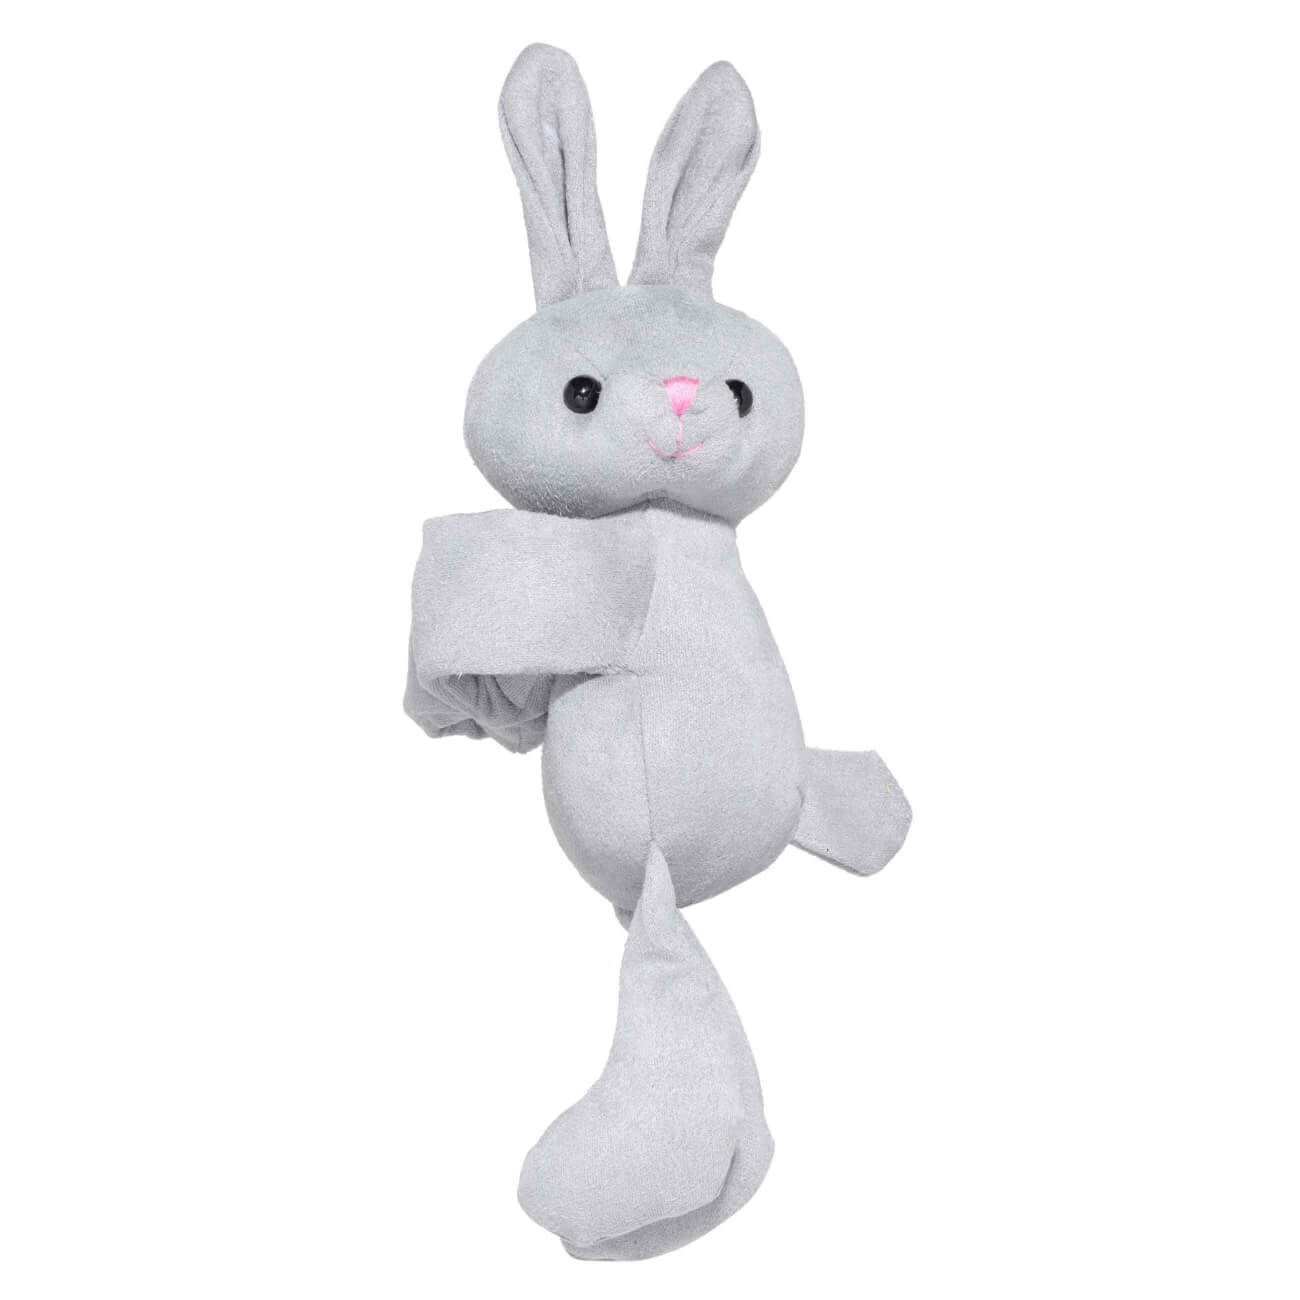 Игрушка-браслет, 21х32 см, мягкая, полиэстер, серая, Заяц, Rabbit игрушка 30 см мягкая с подвижными лапами полиэстер светло серая кролик rabbit toy